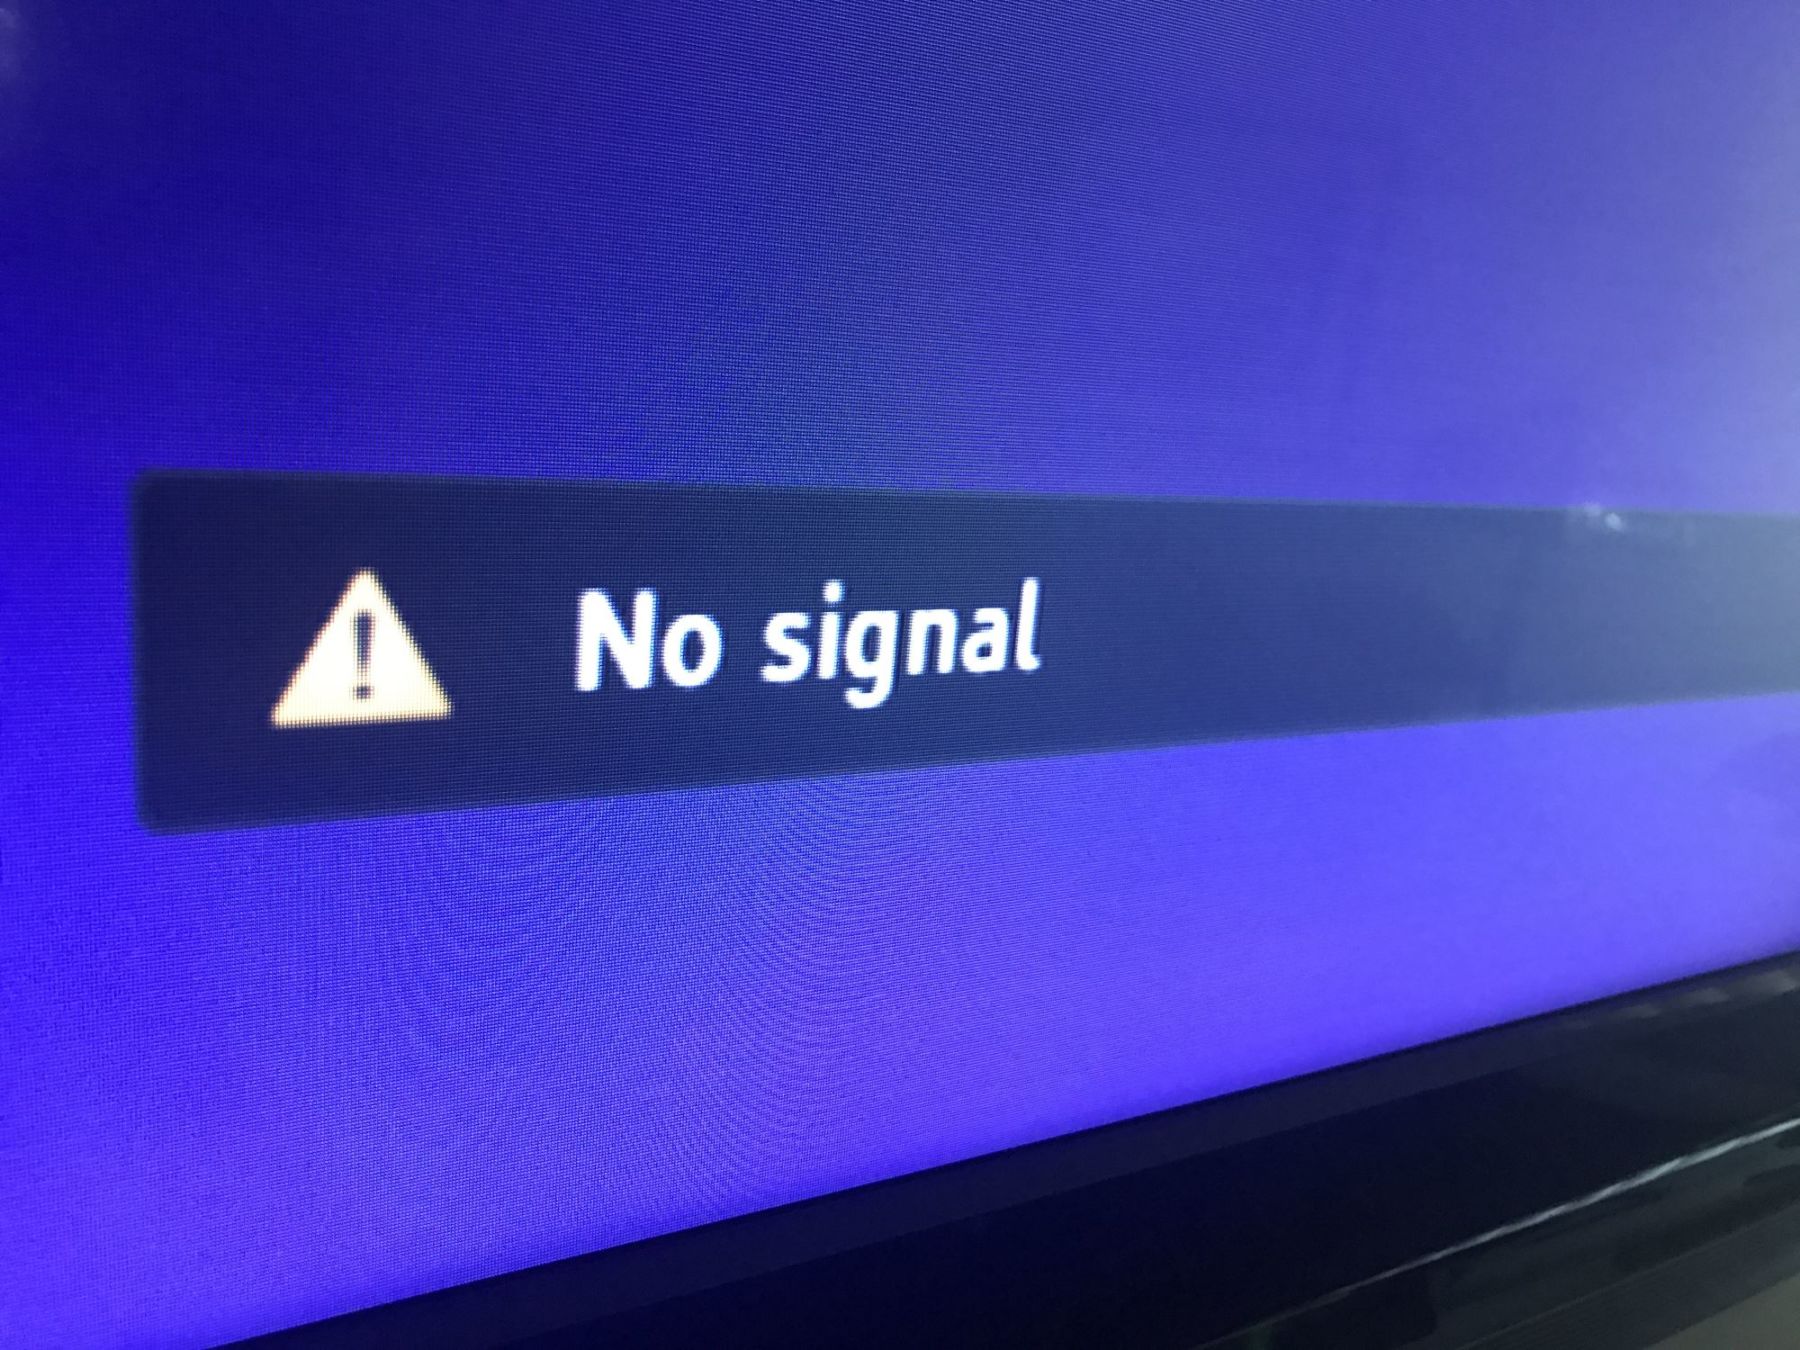 TV screen showing no signal